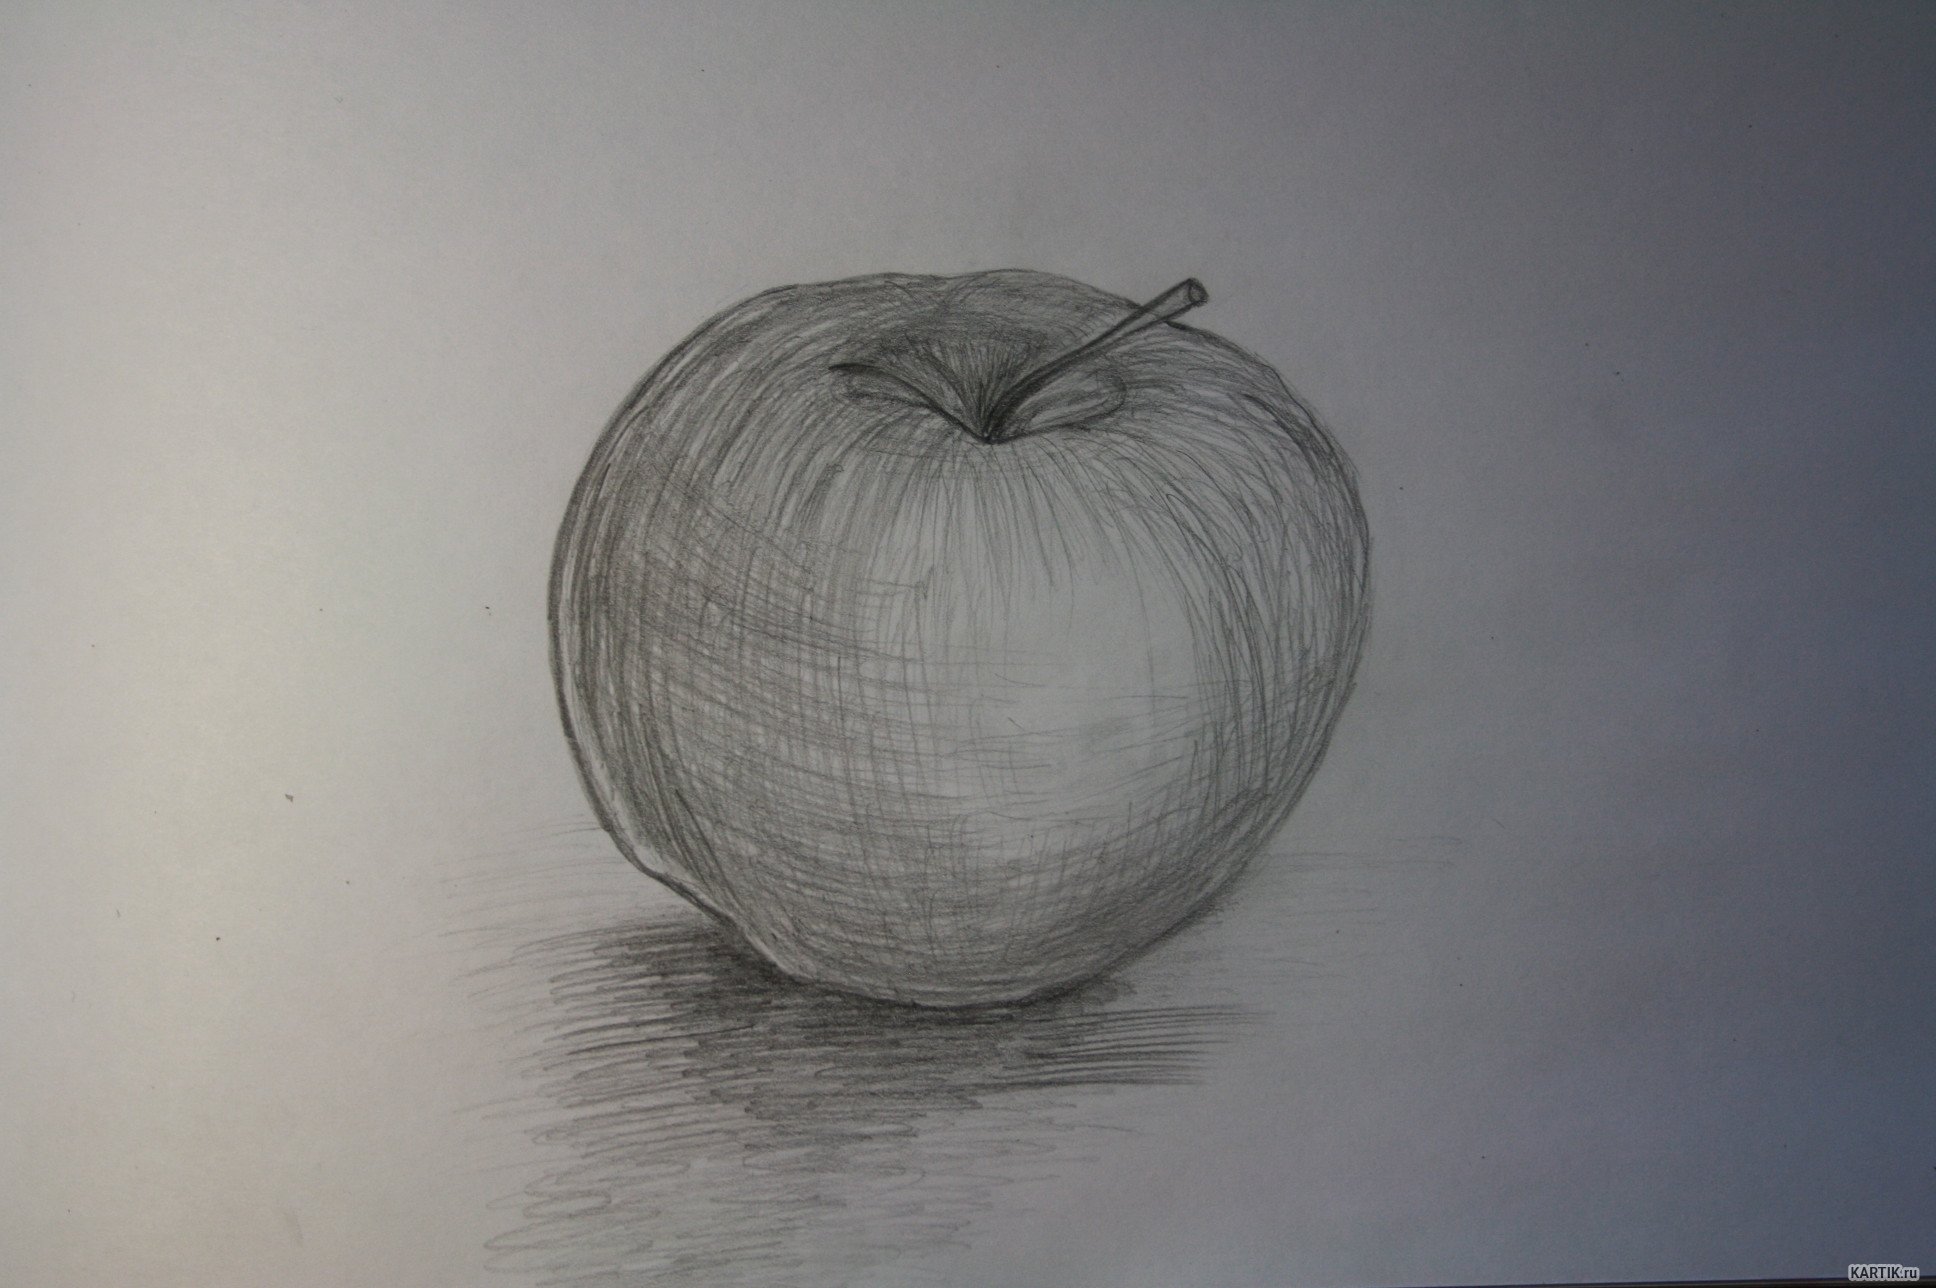 Яблоко для рисования с натуры